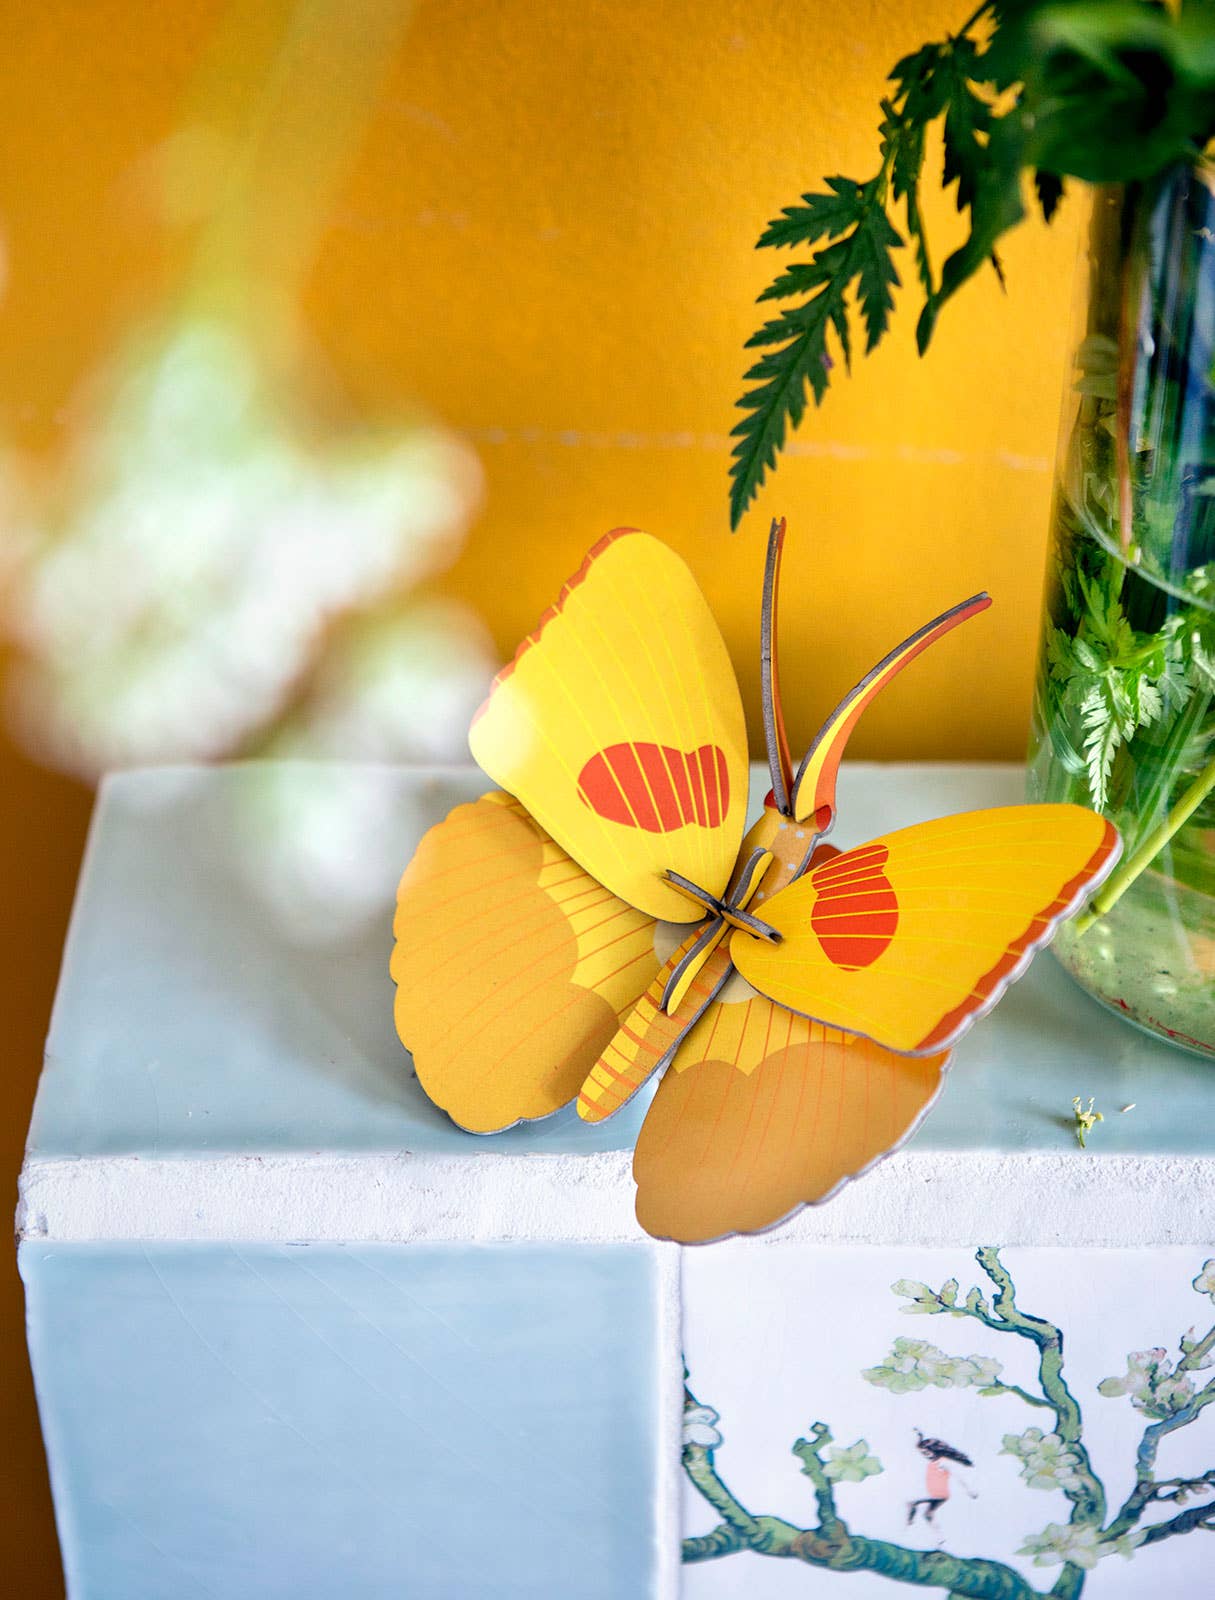 Yellow Butterfly - 3D Wall Art Craft Kit